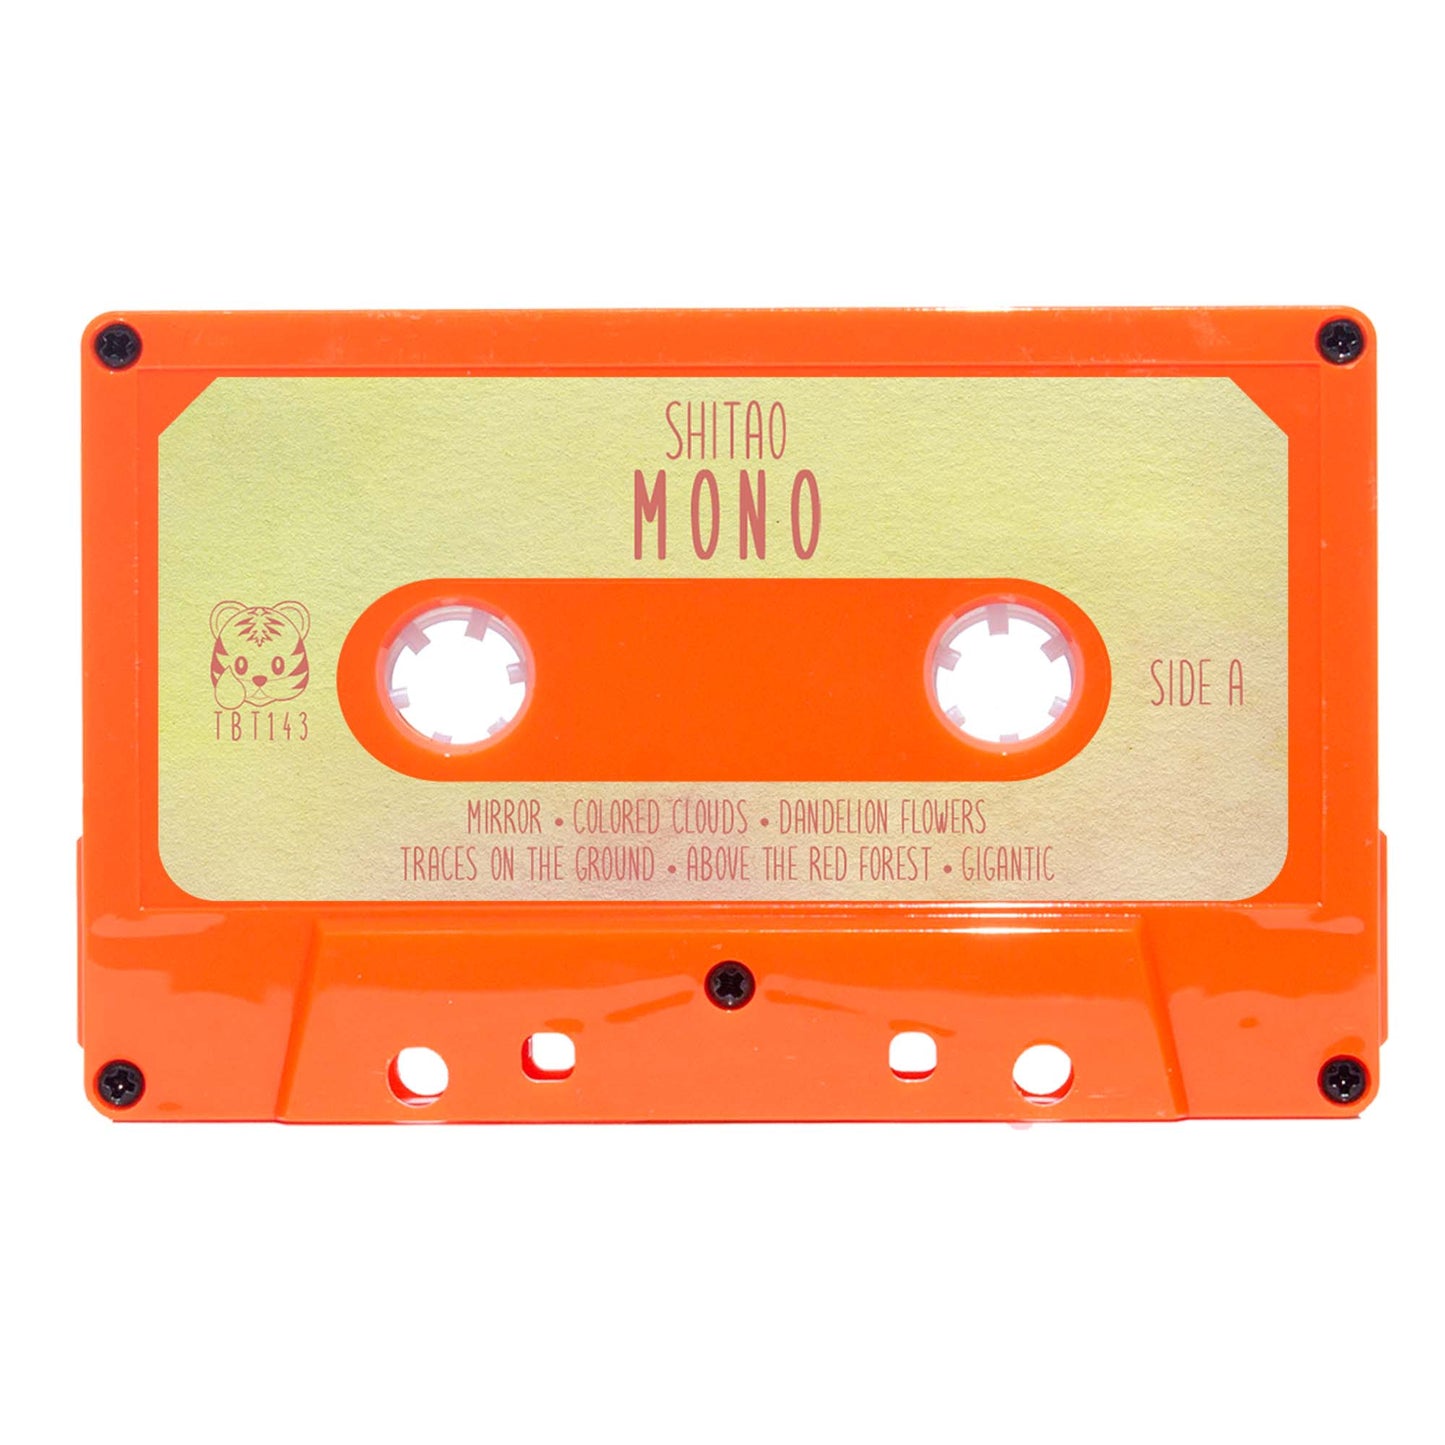 Shitao - "Mono" Limited Edition Cassette Tape